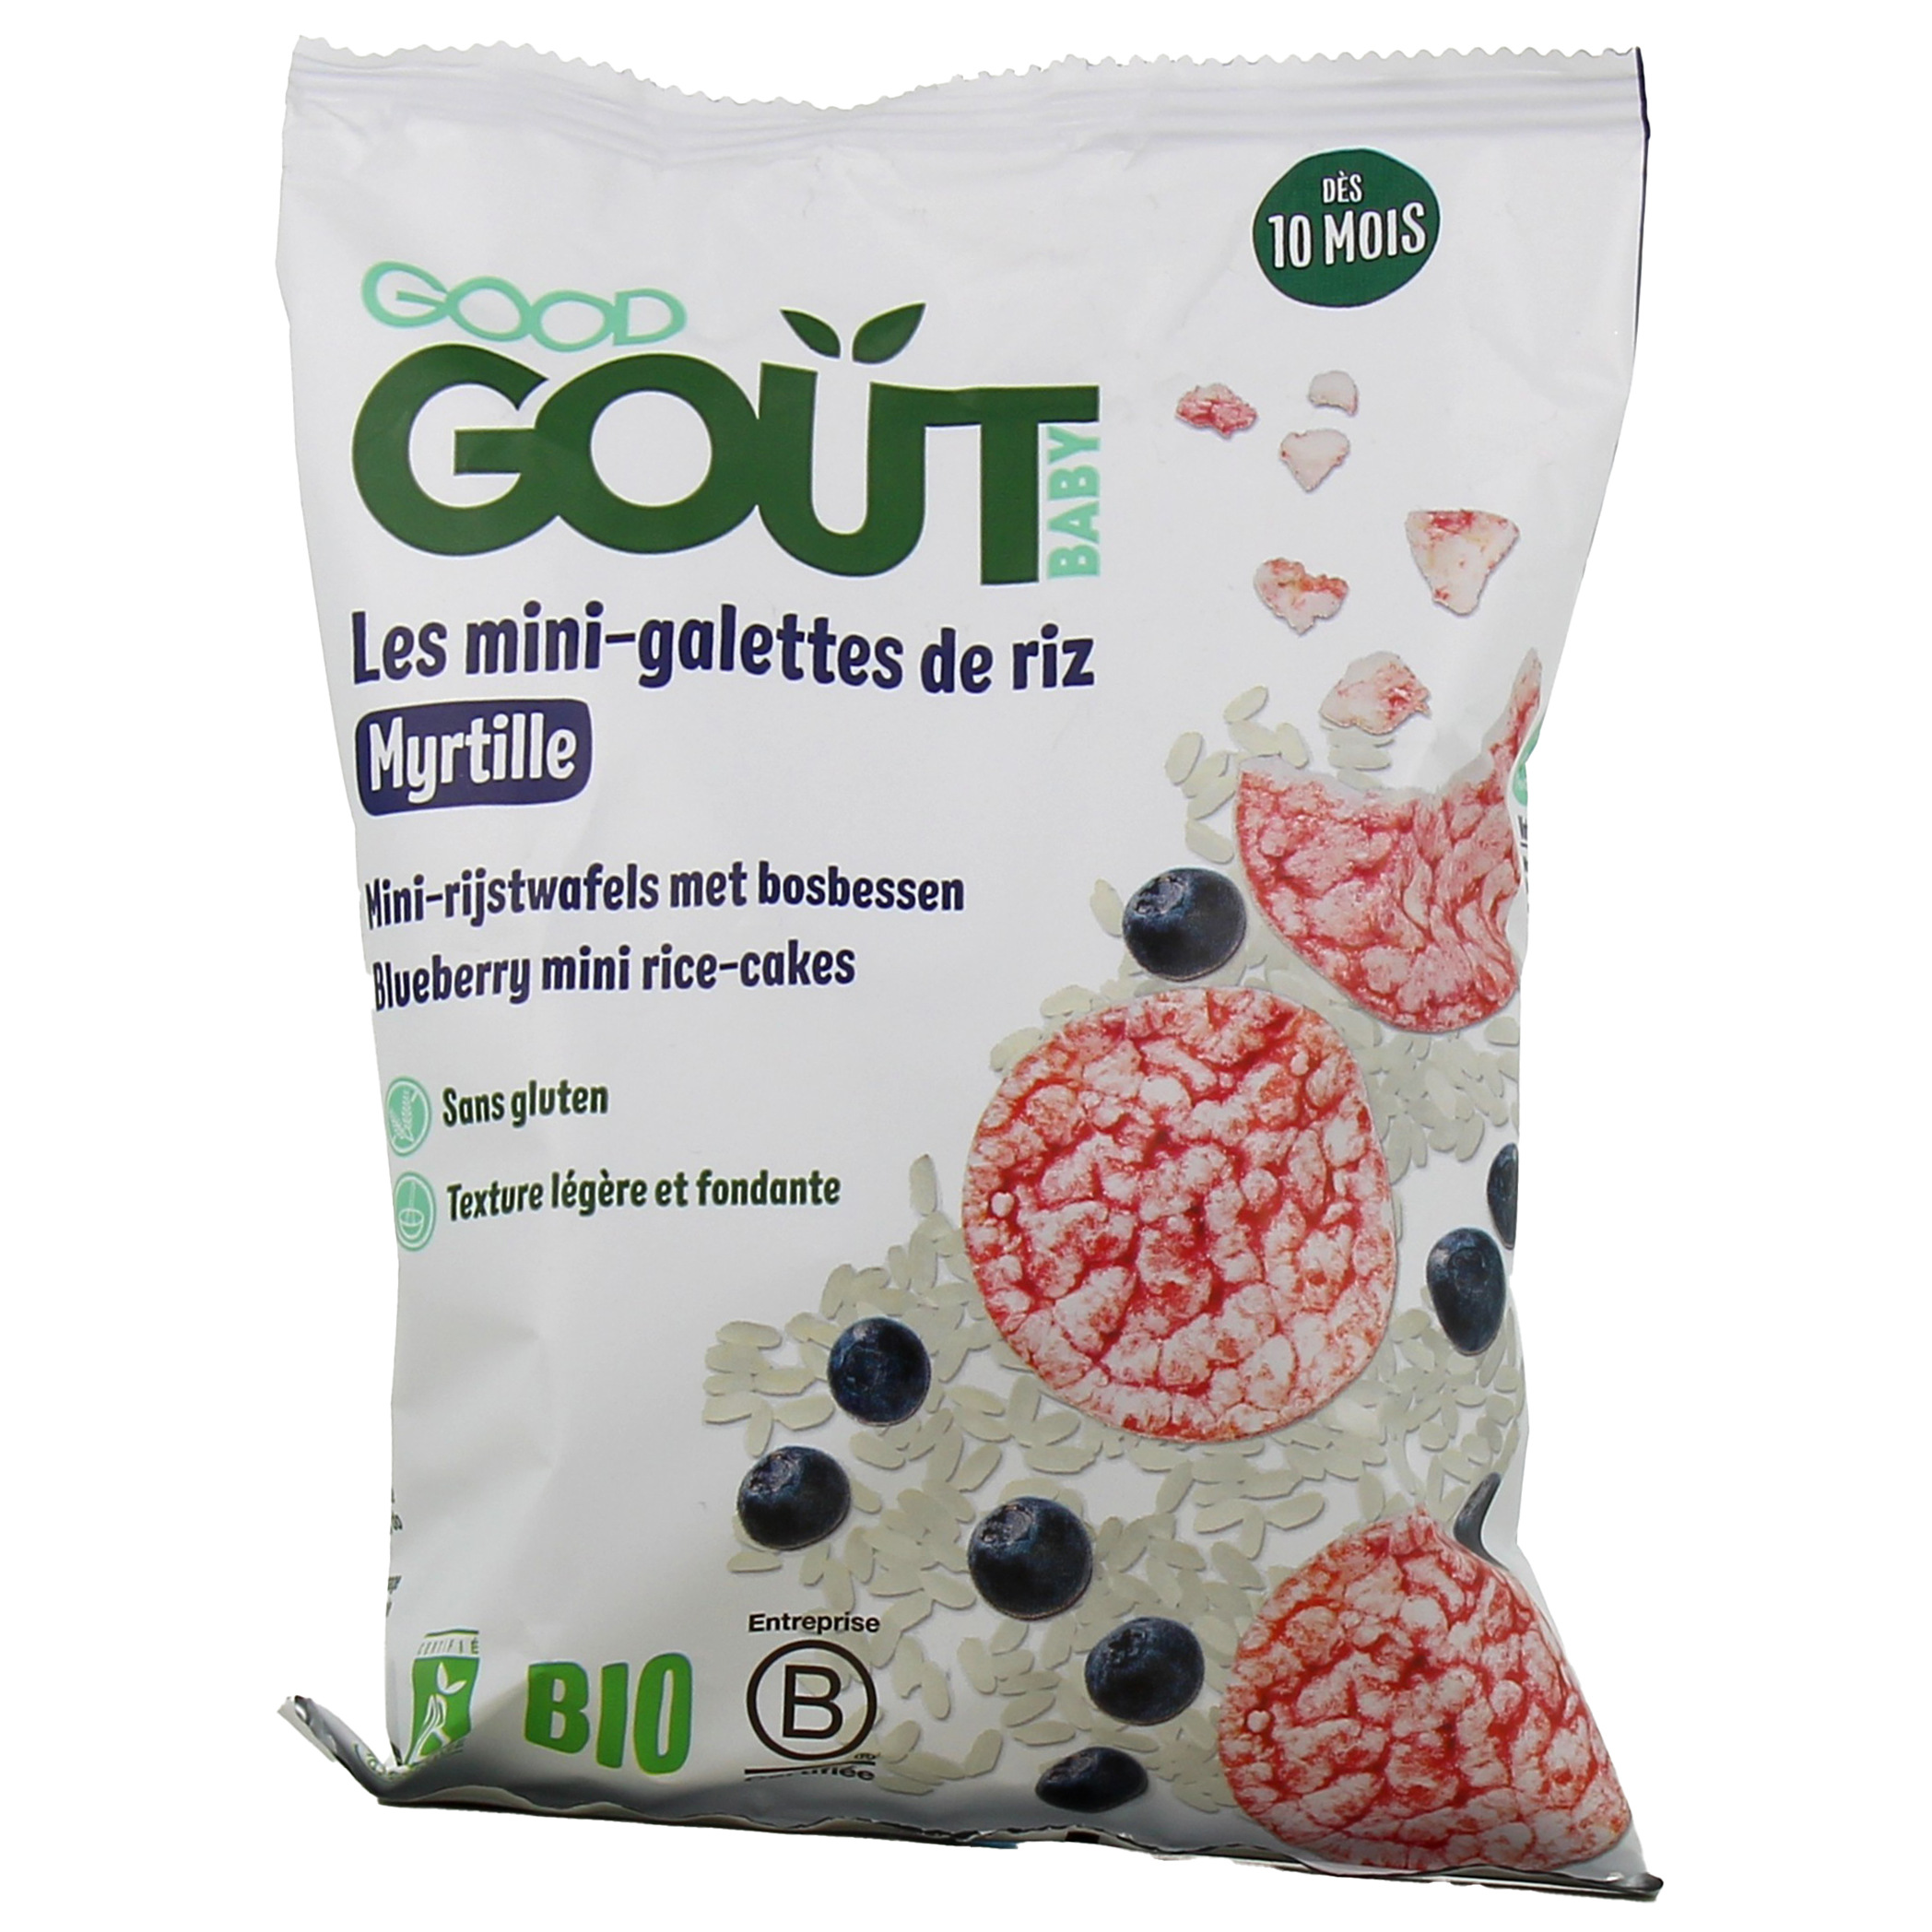 Galettes de riz complet Bio sans gluten Origine France 